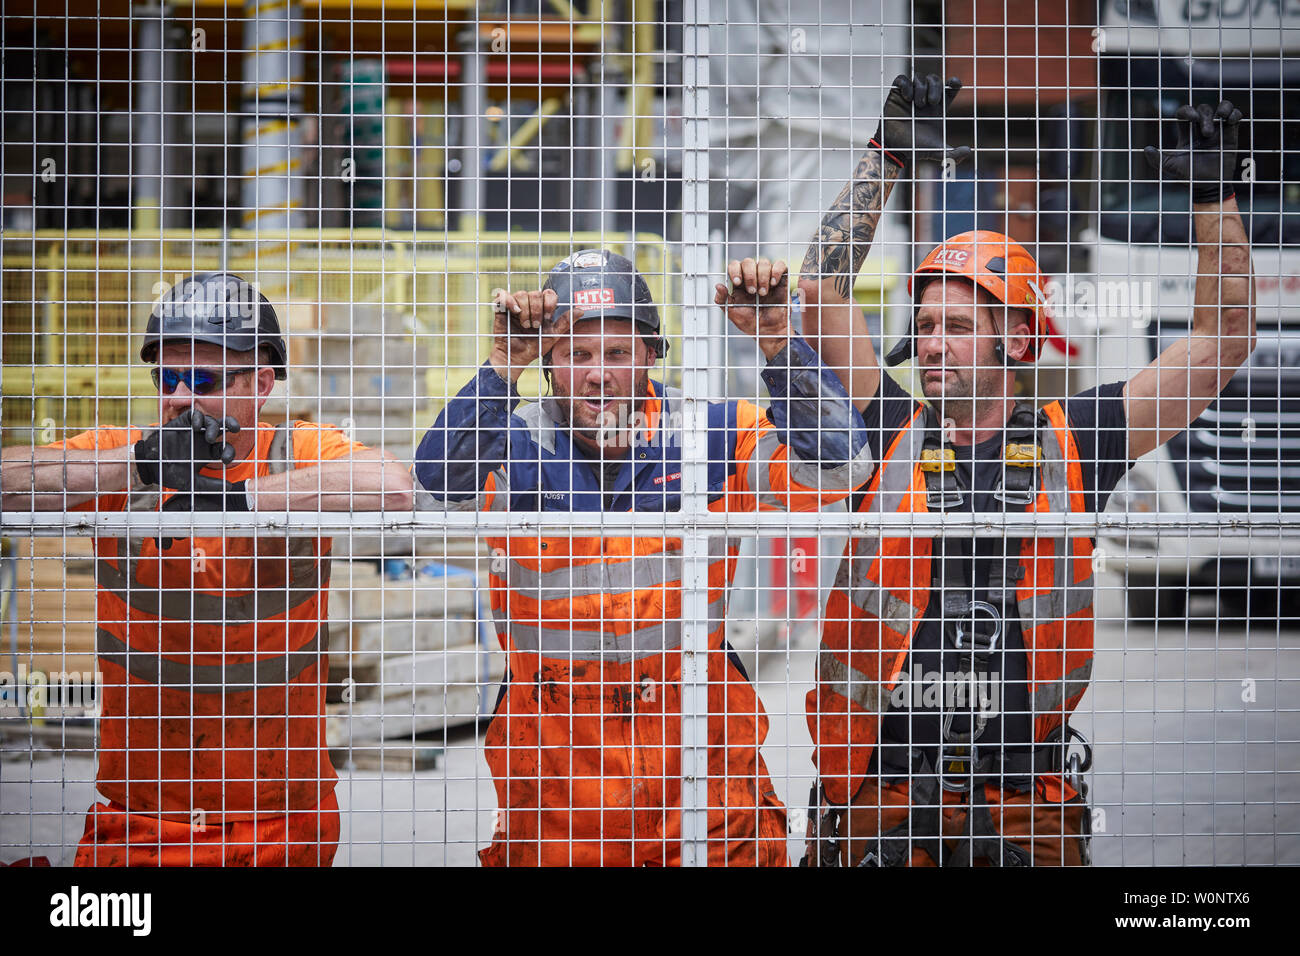 Le centre-ville de Manchester, des ouvriers prendre pause du travail à l'intérieur d'un site de construction, tourné à travers le grillage de métal gates Banque D'Images